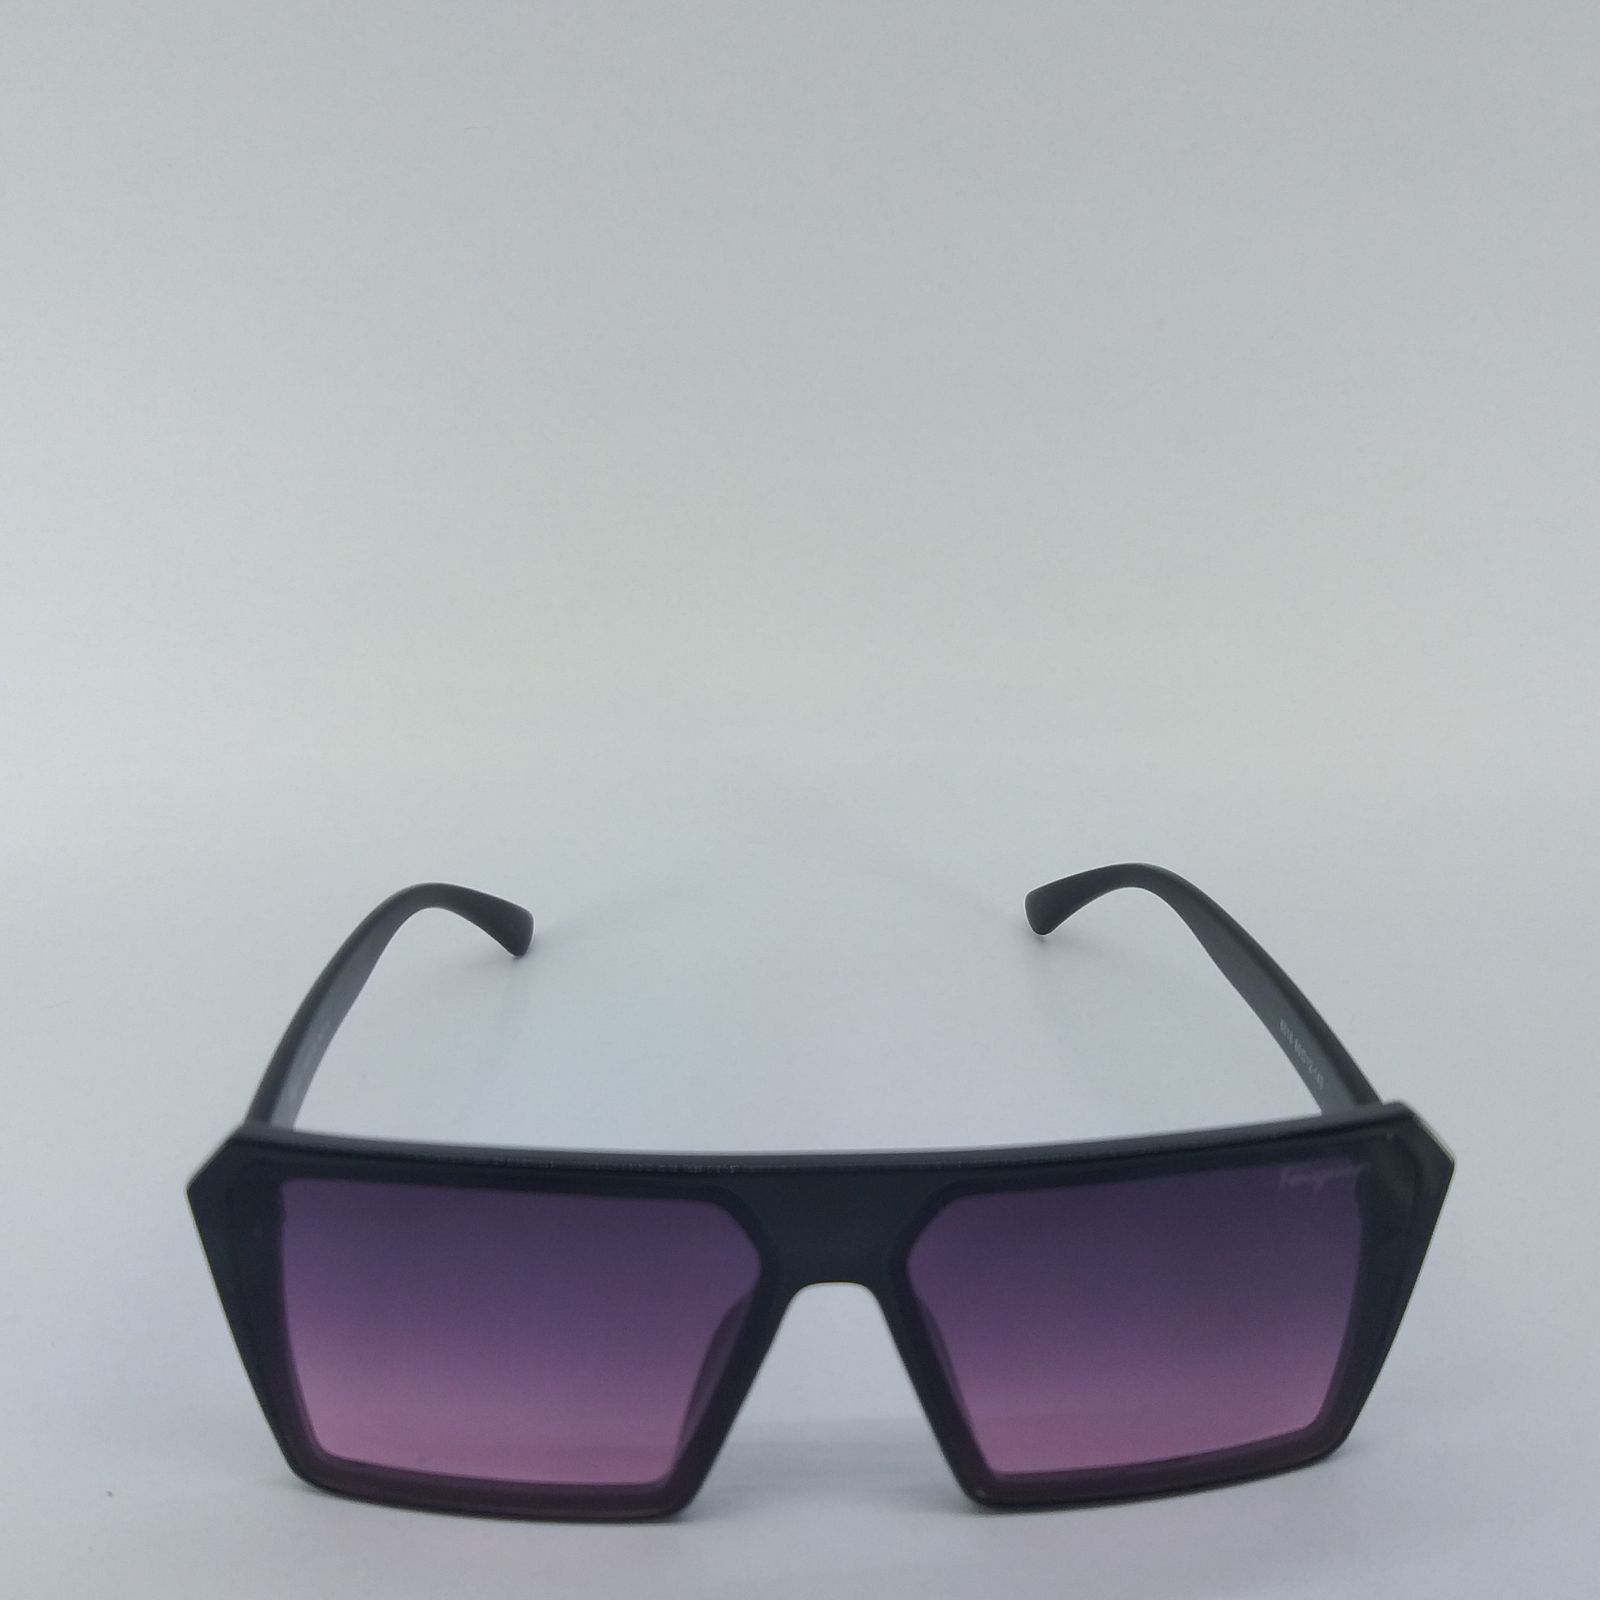 عینک آفتابی سالواتوره فراگامو مدل 6016 -  - 3